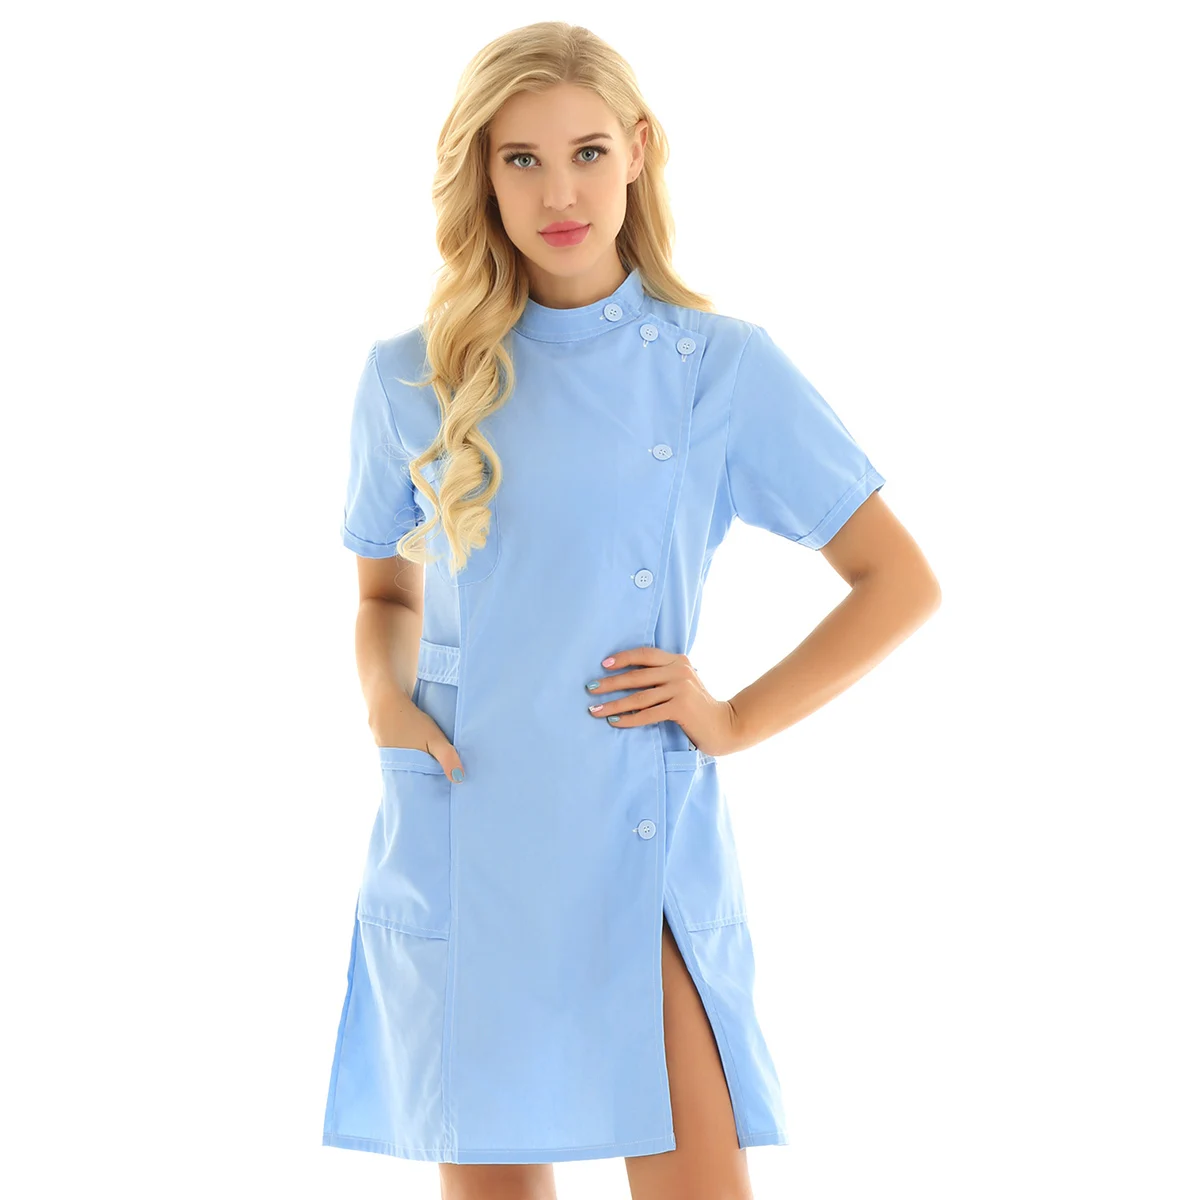 DPOIS, медицинский Халат для женщин, одежда для девушек, Мандариновый воротник, униформа медсестры, парикмахерские комбинезоны, лабораторное пальто для медсестер - Цвет: Sky Blue